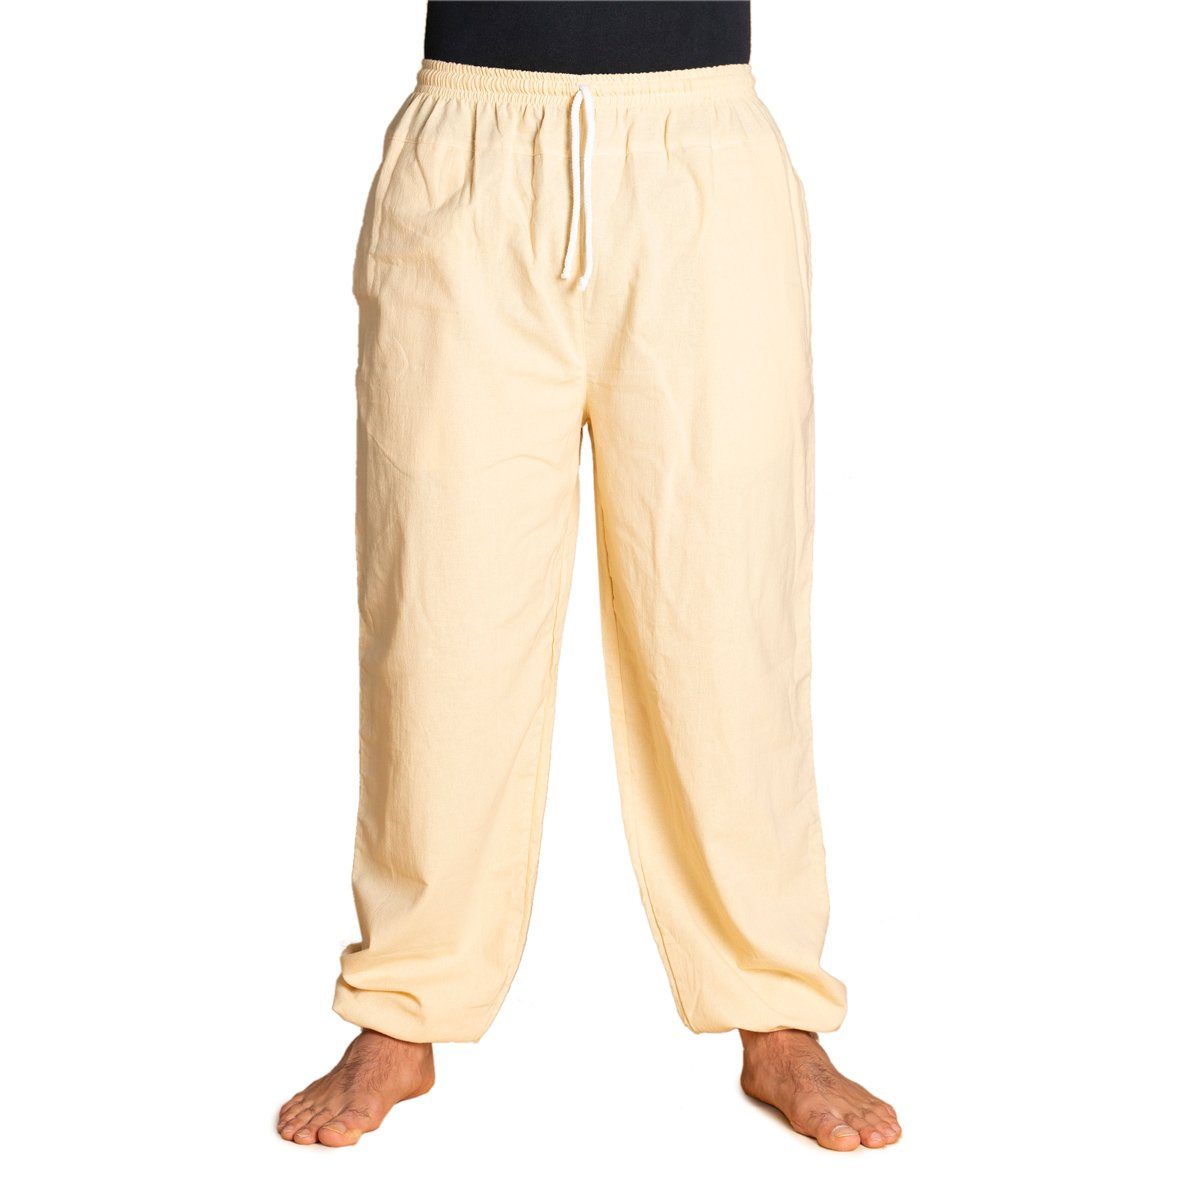 PANASIAM Wellnesshose E-Pants leichte Unisex Bundhose aus weicher Baumwolle für Damen und Herren Freizeithose mit Tunnelzug Relaxhose bequeme Sommerhose